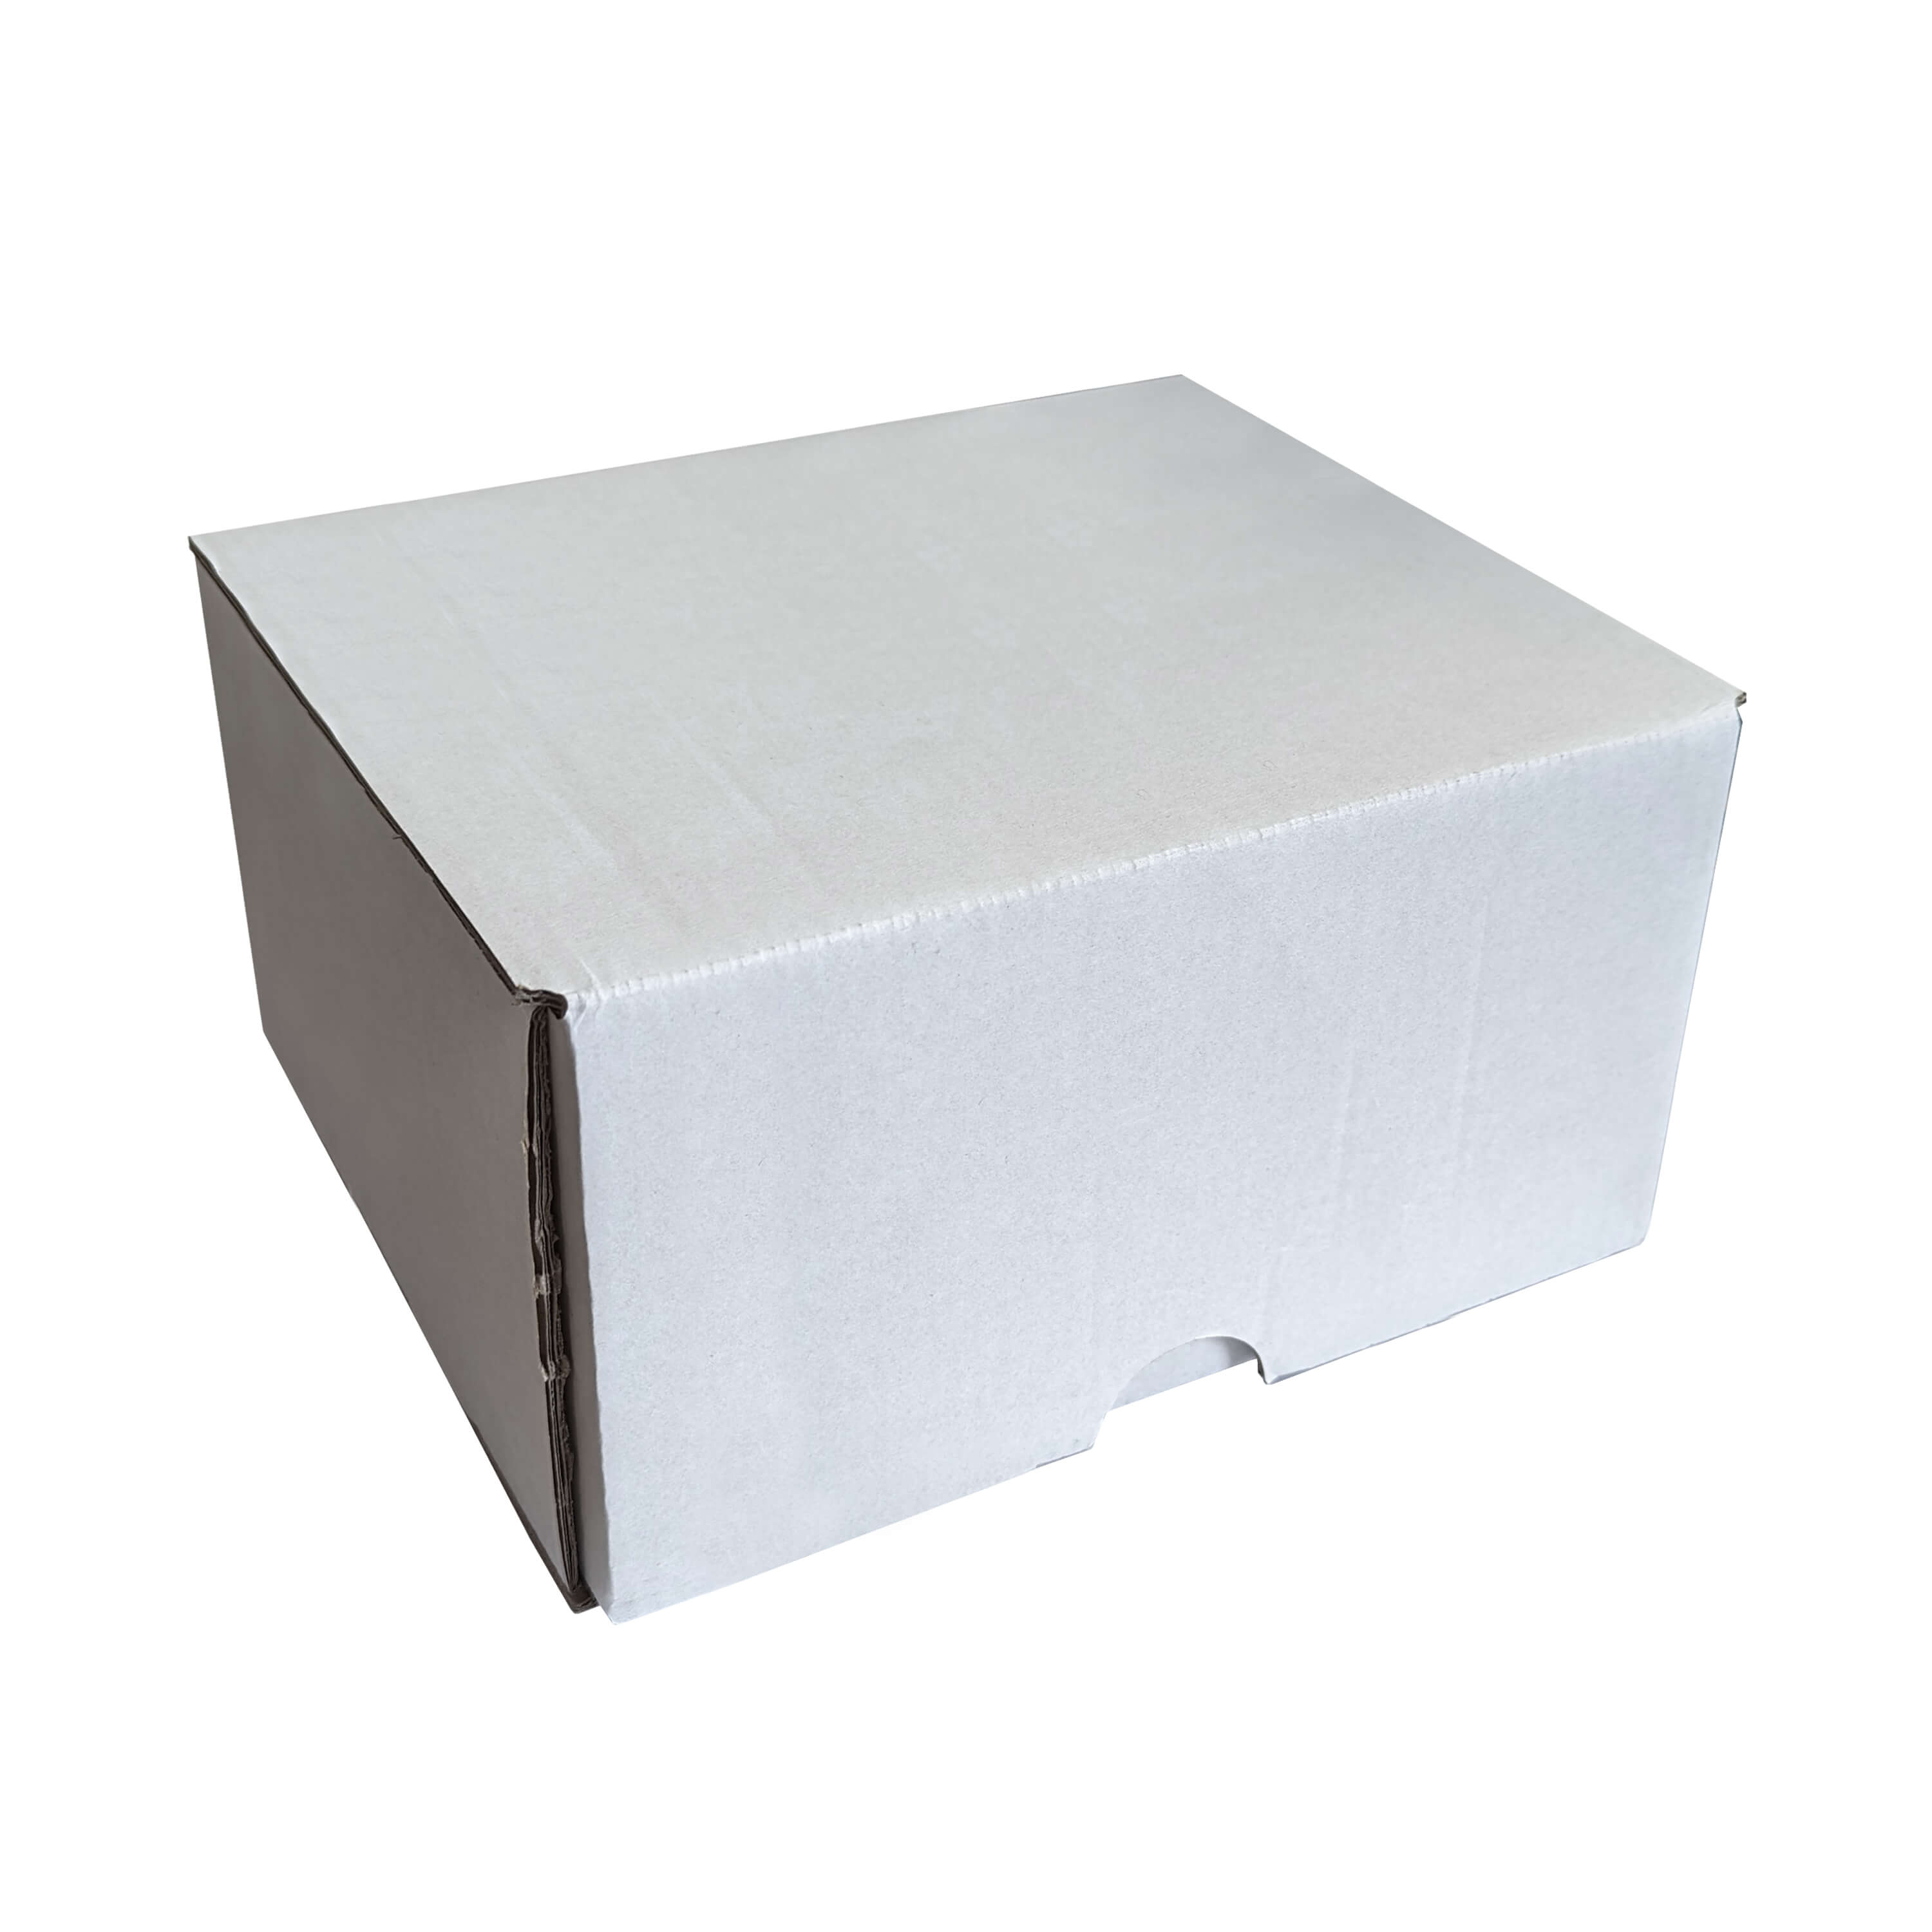 Transport Box for 4pcs 11oz Mugs - White